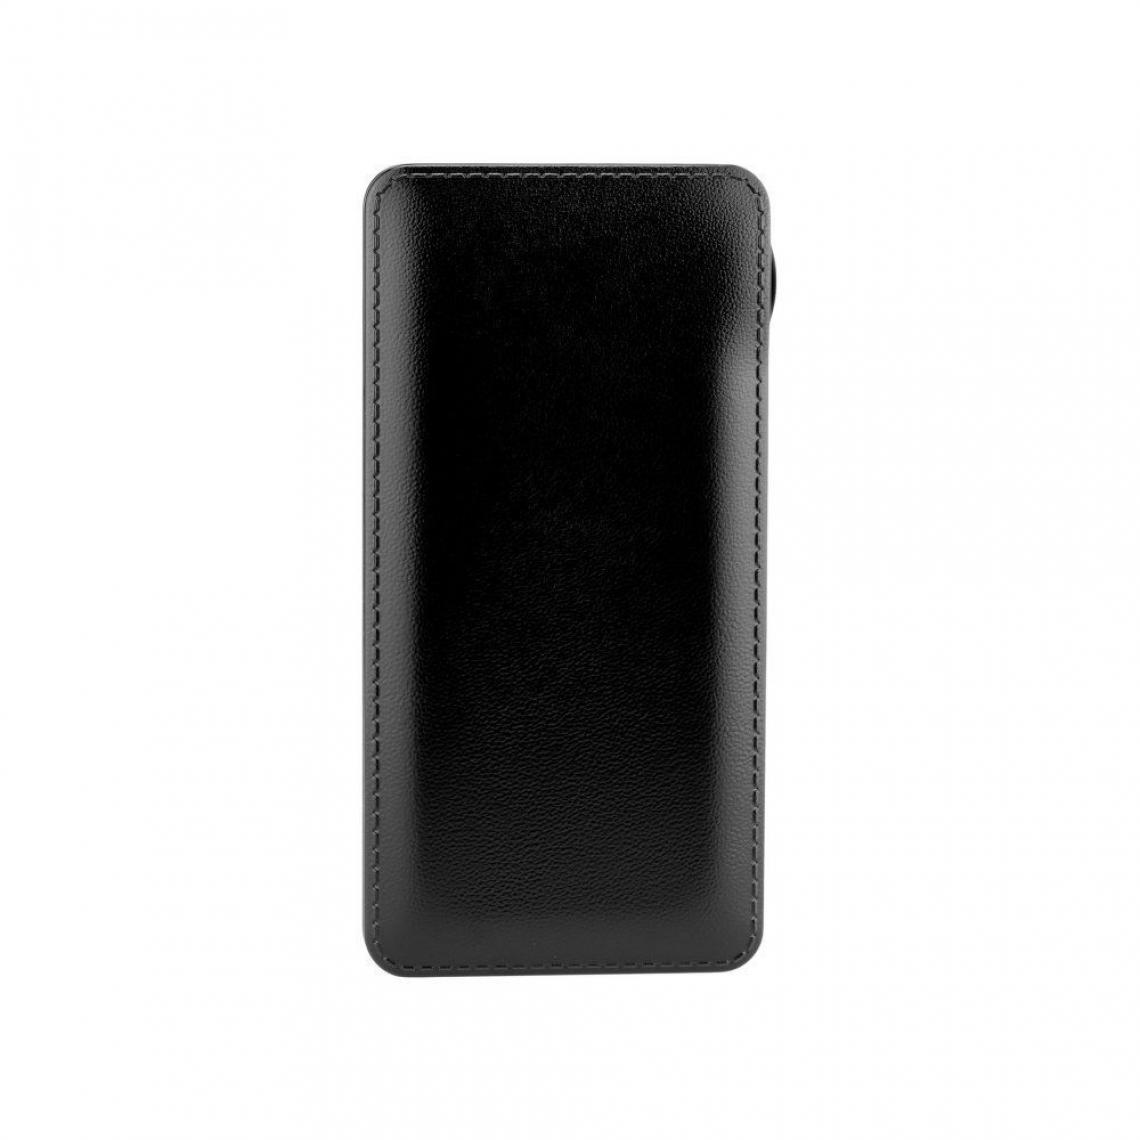 Ozzzo - Chargeur batterie externe 10000mAh powerbank ozzzo noir pour Nokia C2 2020 - Autres accessoires smartphone